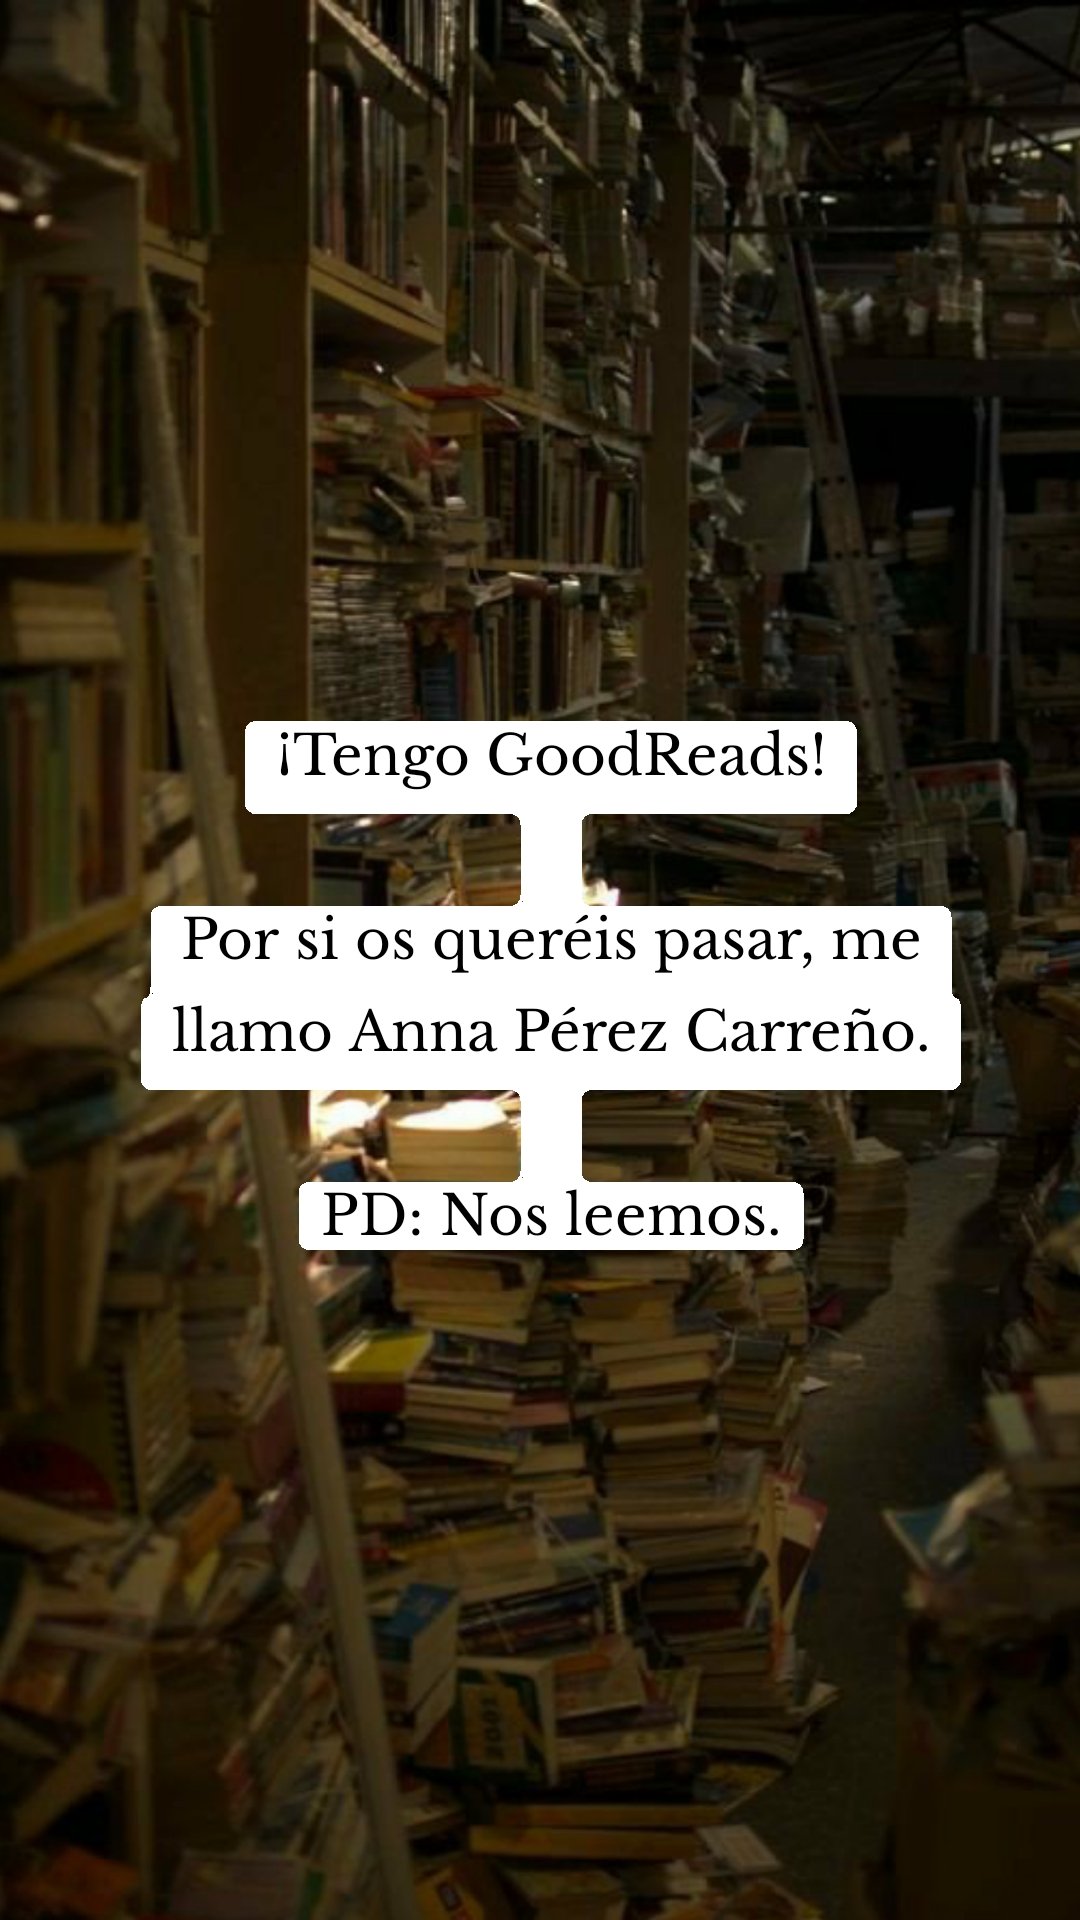 ¡Tengo GoodReads!

Por si os queréis pasar, me llamo Anna Pérez Carreño.

PD: Nos leemos.